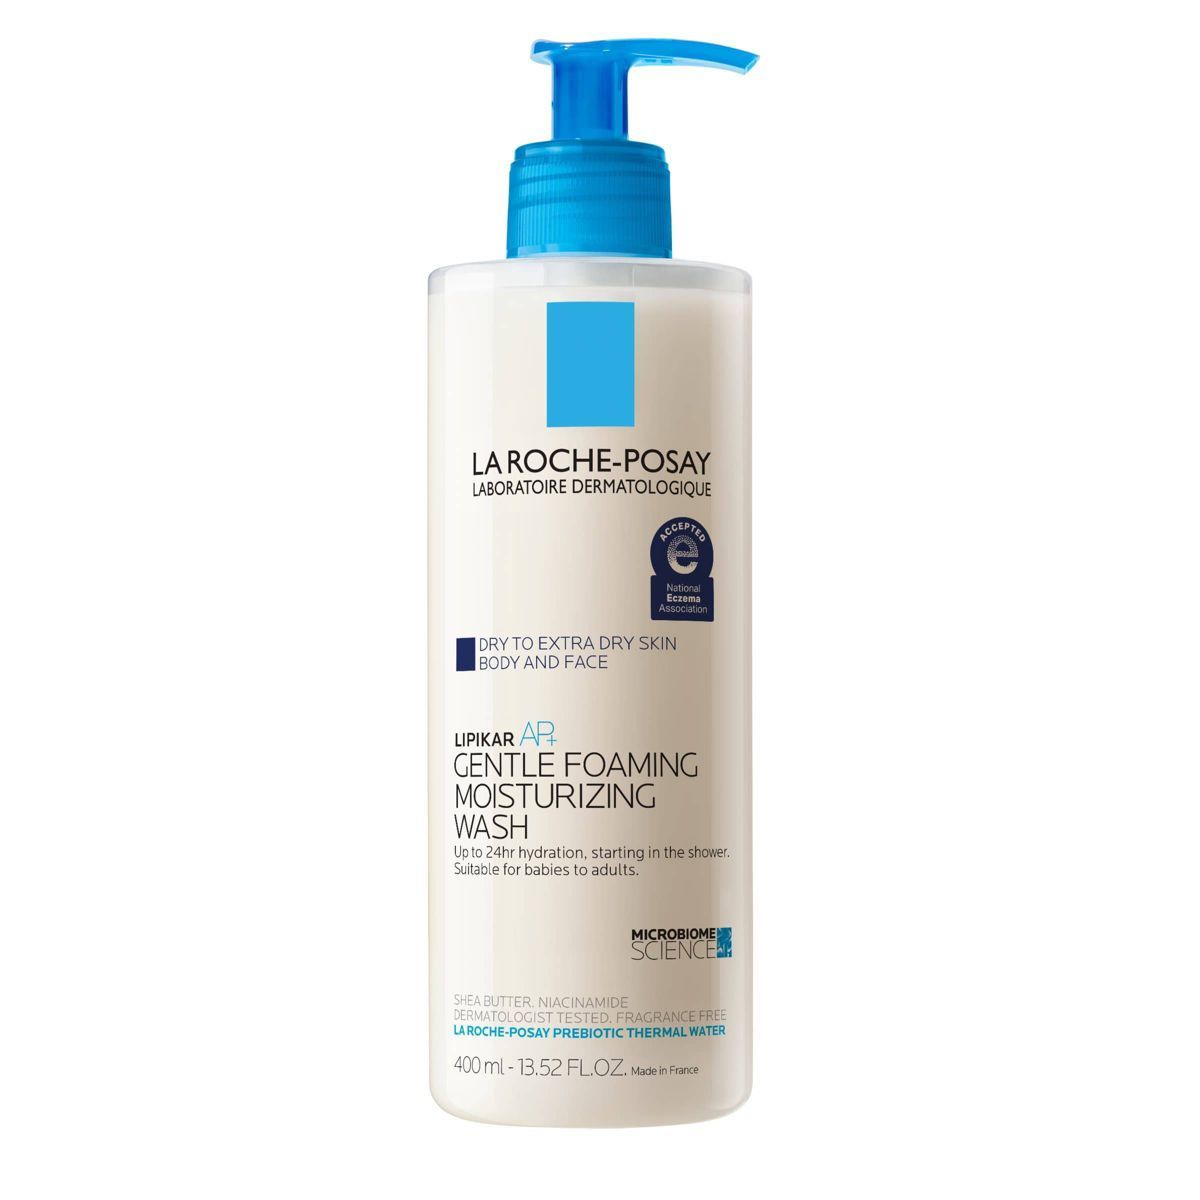 La Roche Posay Lipikar Wash AP+ Gentle Foaming Moisturizing Body & Face Wash  - 13.52 fl oz | Target